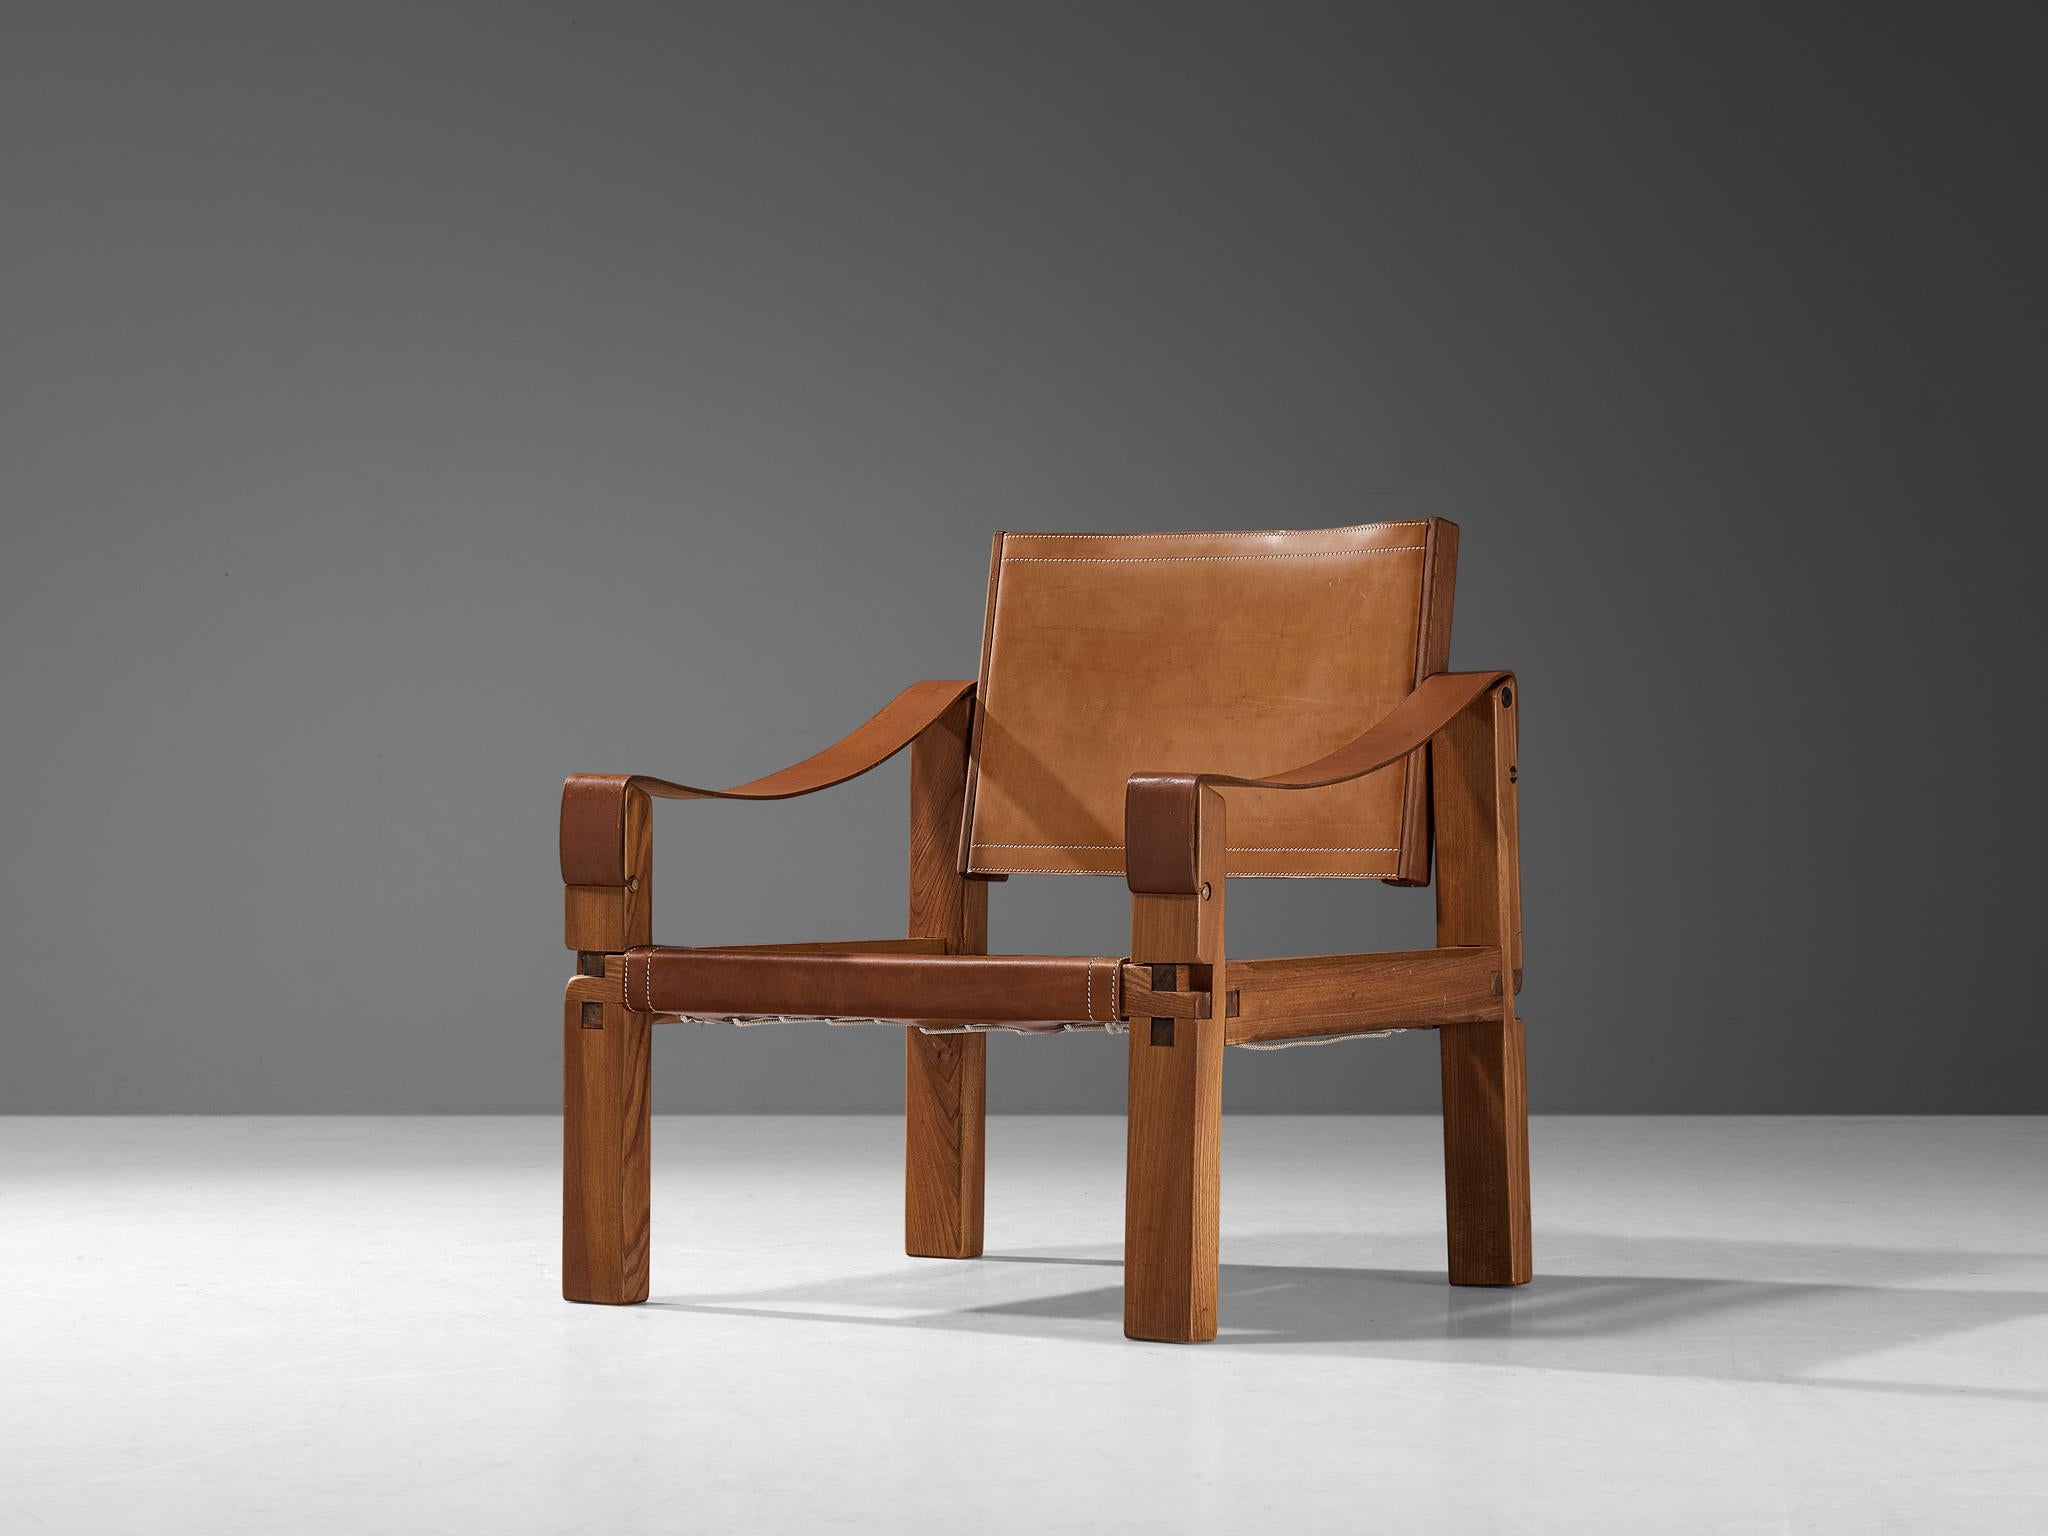 Pierre CIRCA, fauteuil modèle 'S10X', orme, cuir, France, vers 1964.

Ce modèle est une première édition, créée selon la méthodologie artisanale originale de Pierre Chapo. Ce fauteuil confortable en bois d'orme massif et cuir de selle cognac